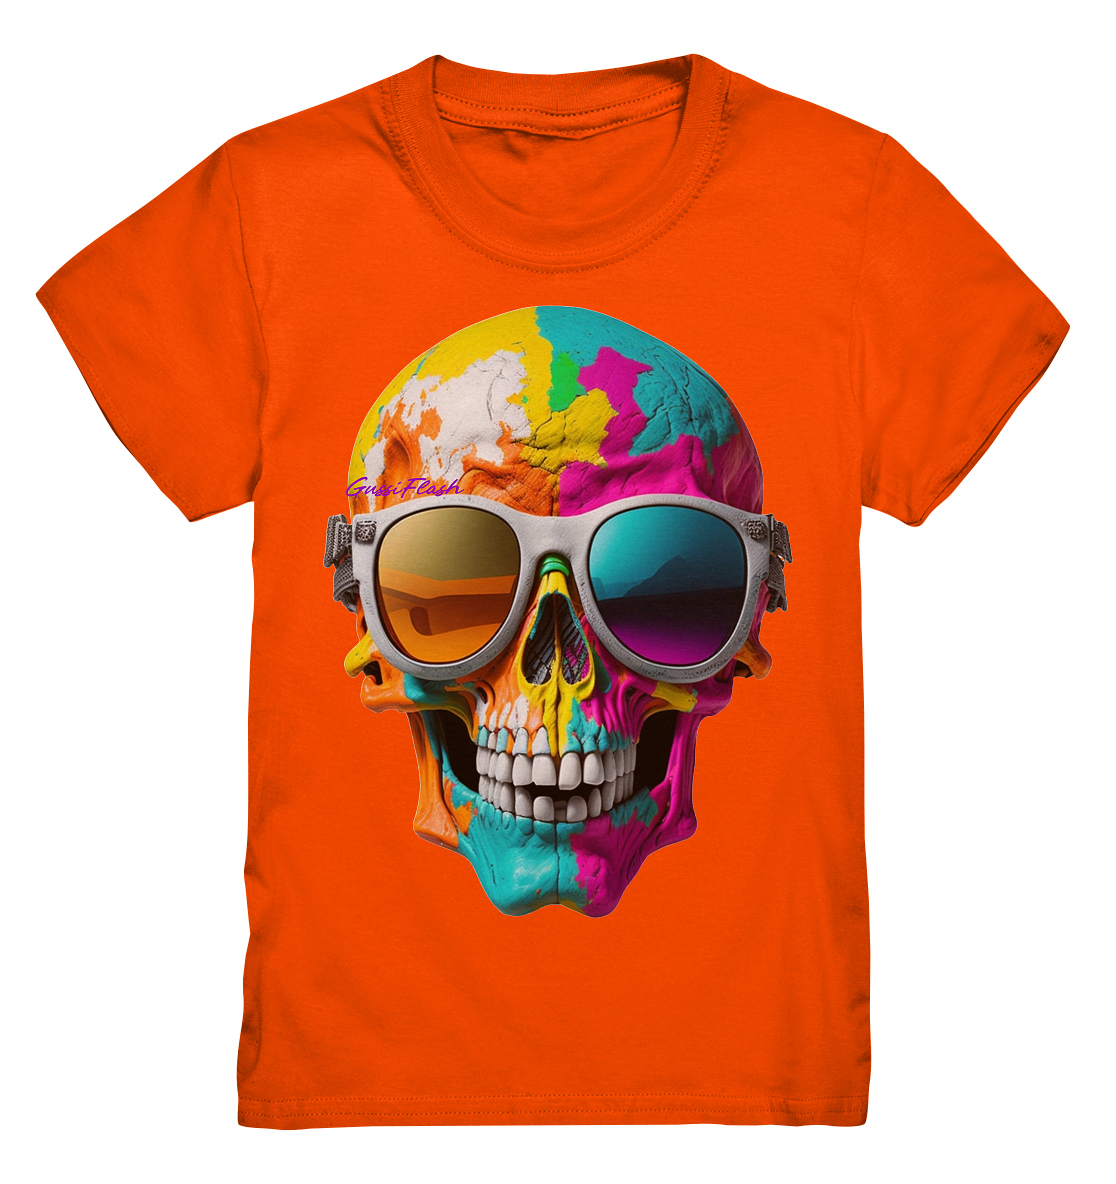 Lachender Totenkopf, total bunt, mit Brille - Kids Premium Shirt